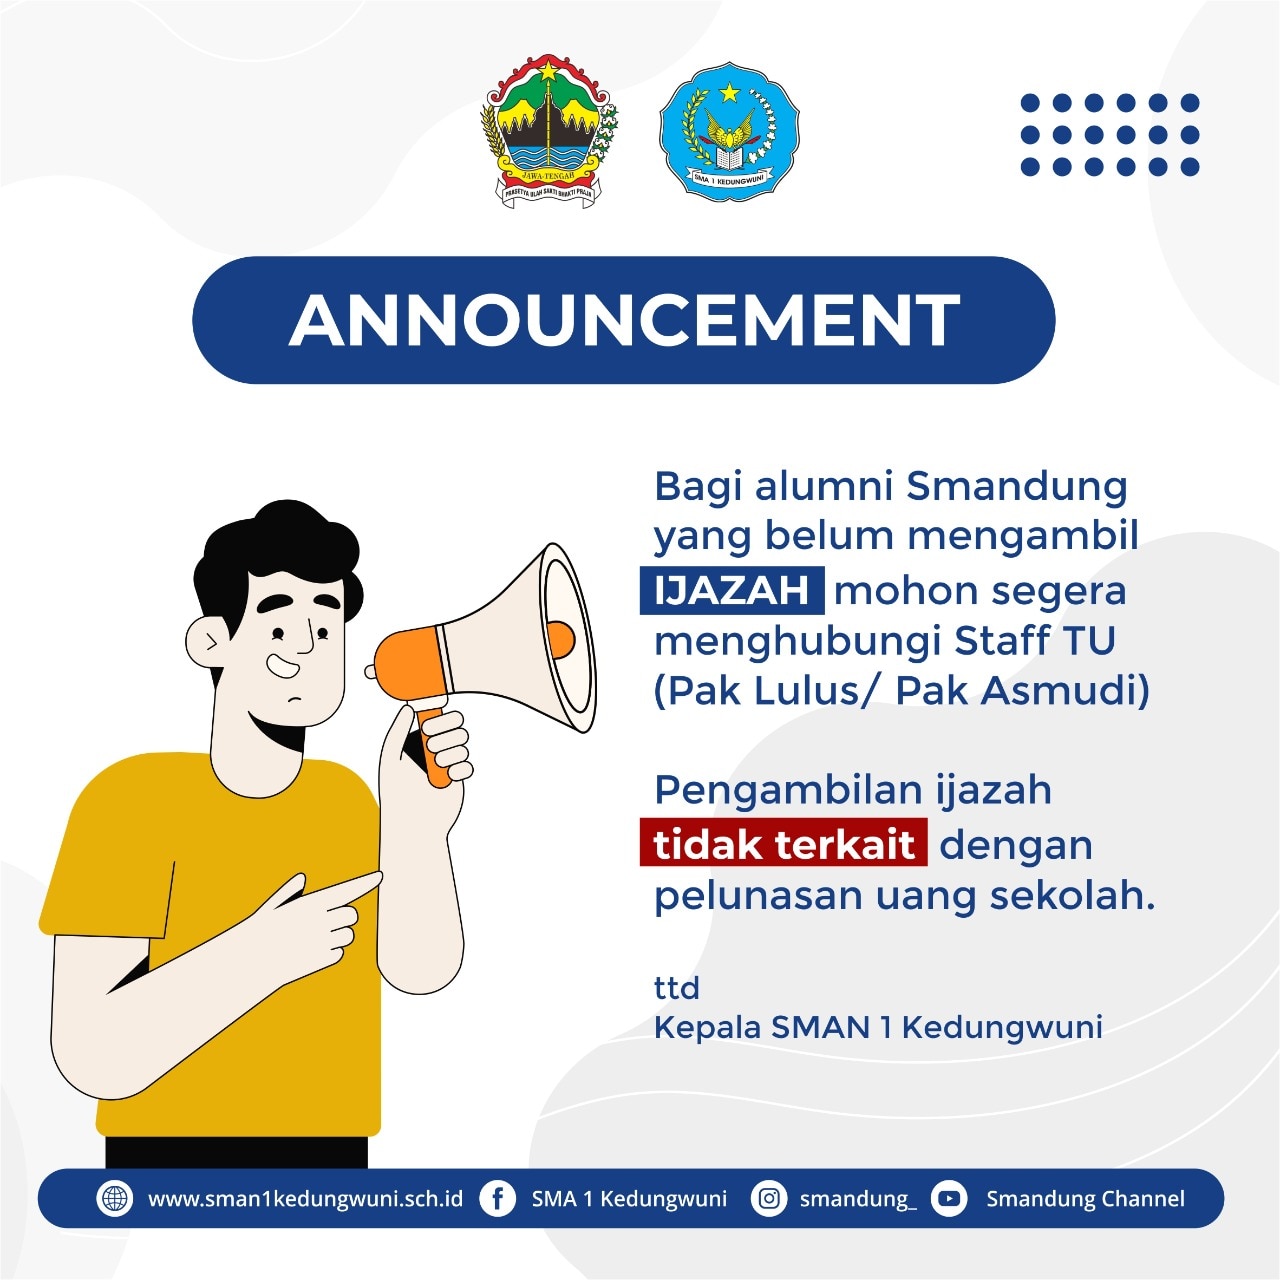 Informasi Penting untuk Alumni SMAN 1 Kedungwuni